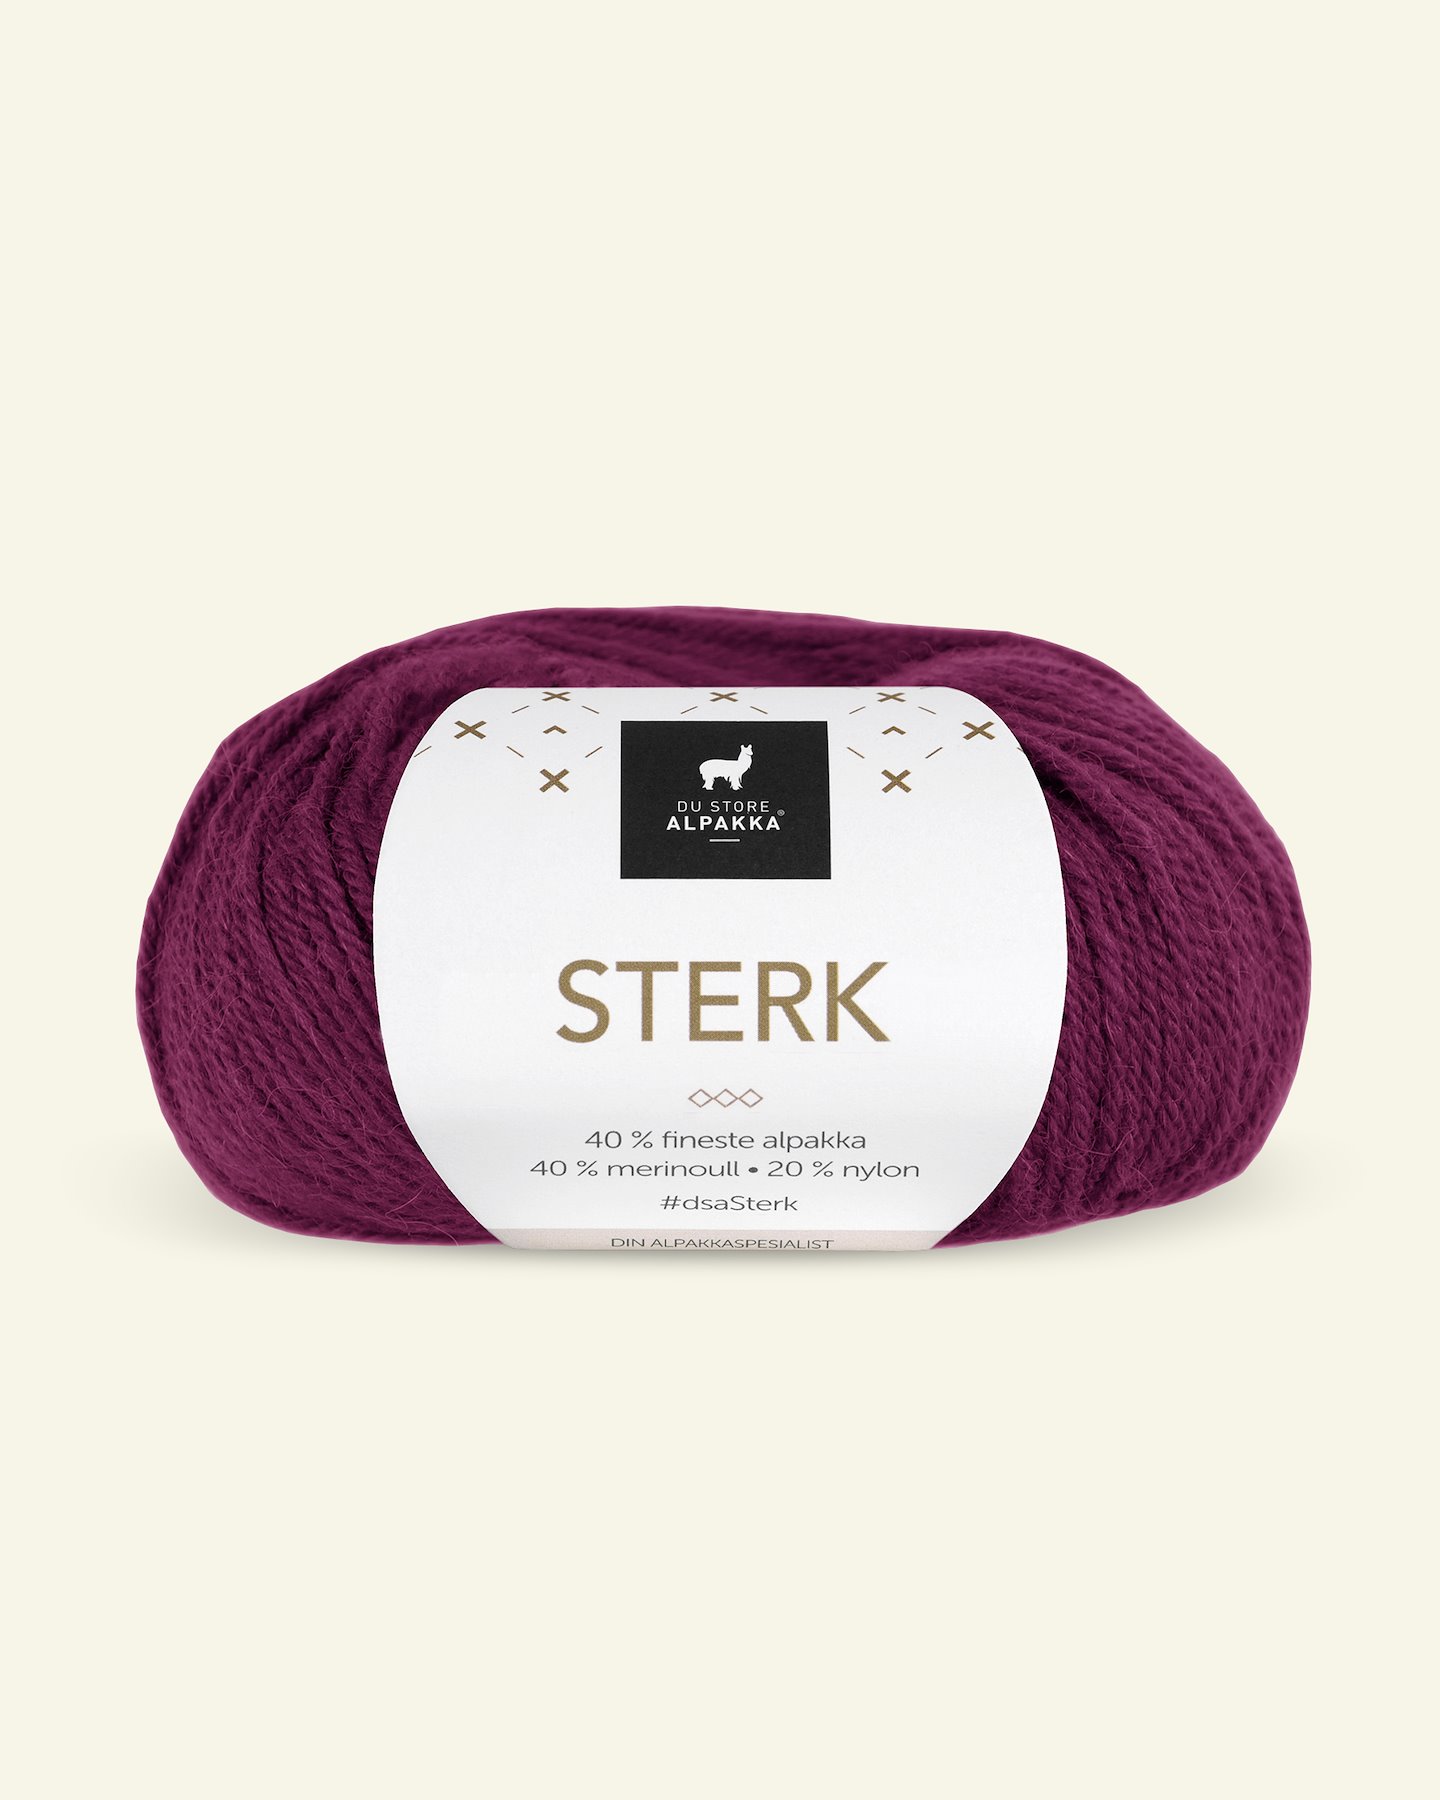 Du Store Alpakka, alpaca merino mixed yarn "Sterk", fuchsia (832) 90000670_pack